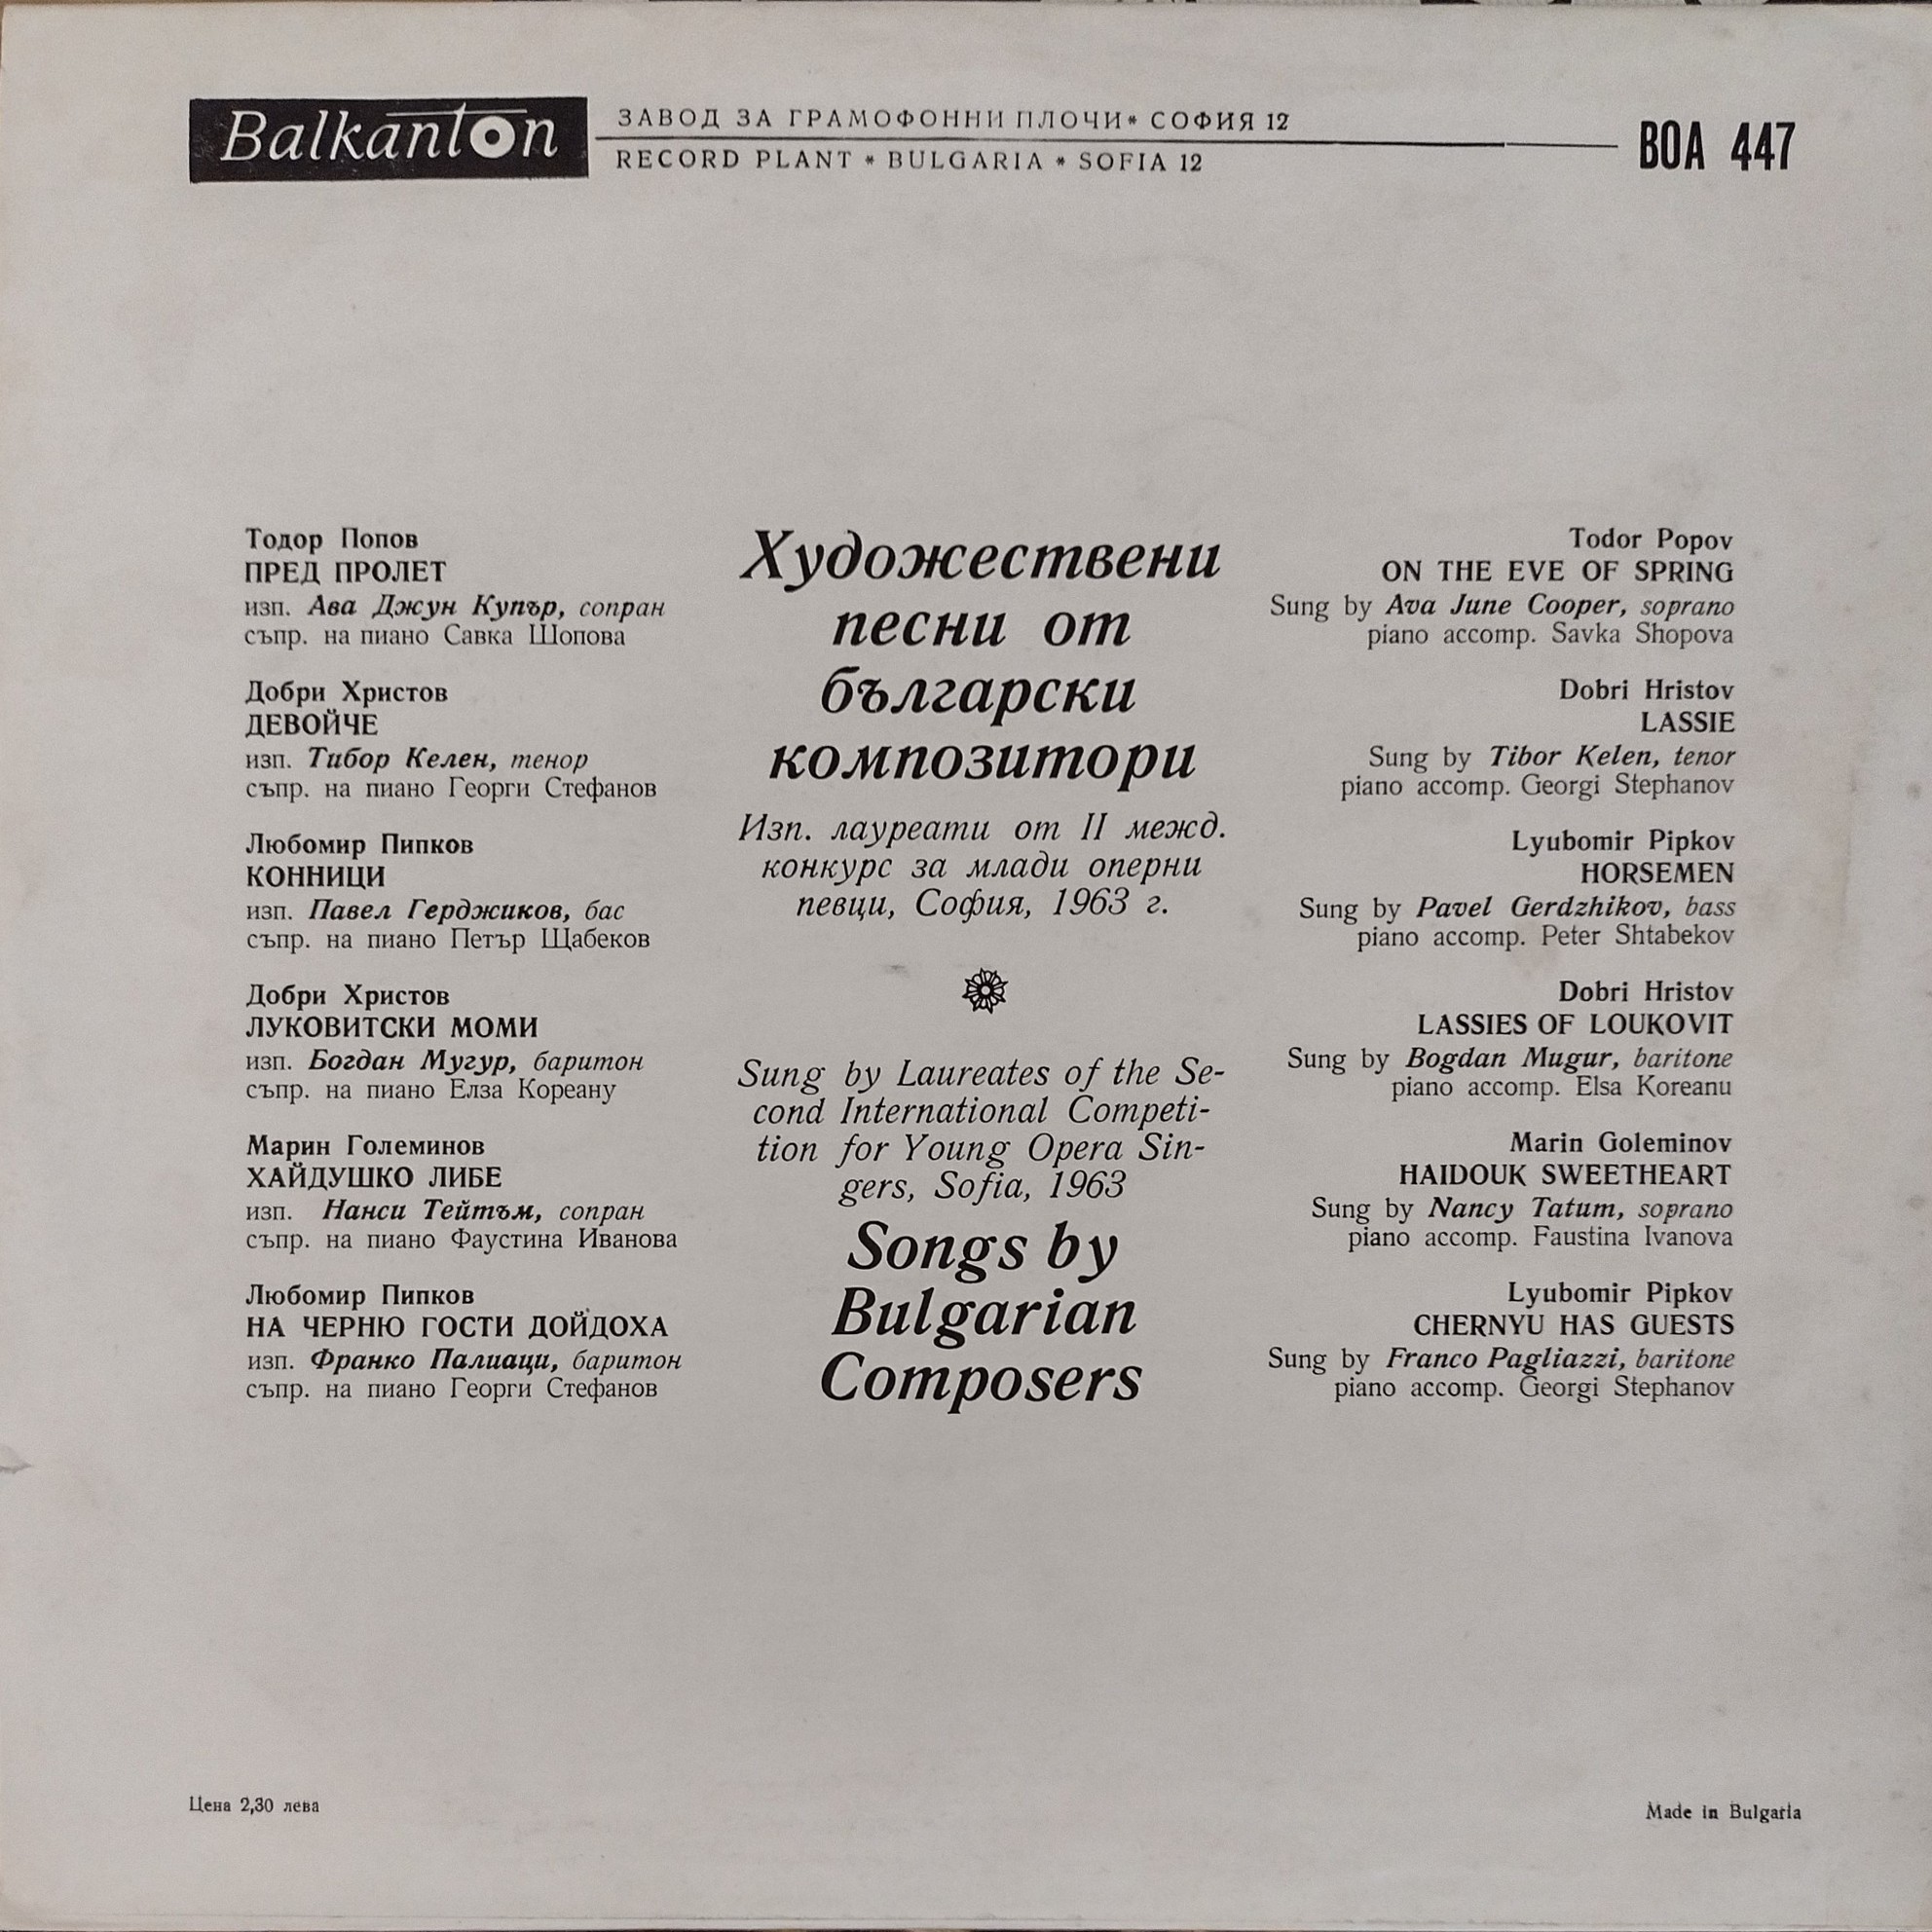 Художествени песни от български композитори. Лауреати на 2 международен конкурс за млади оперни певци, София, 1963 г.